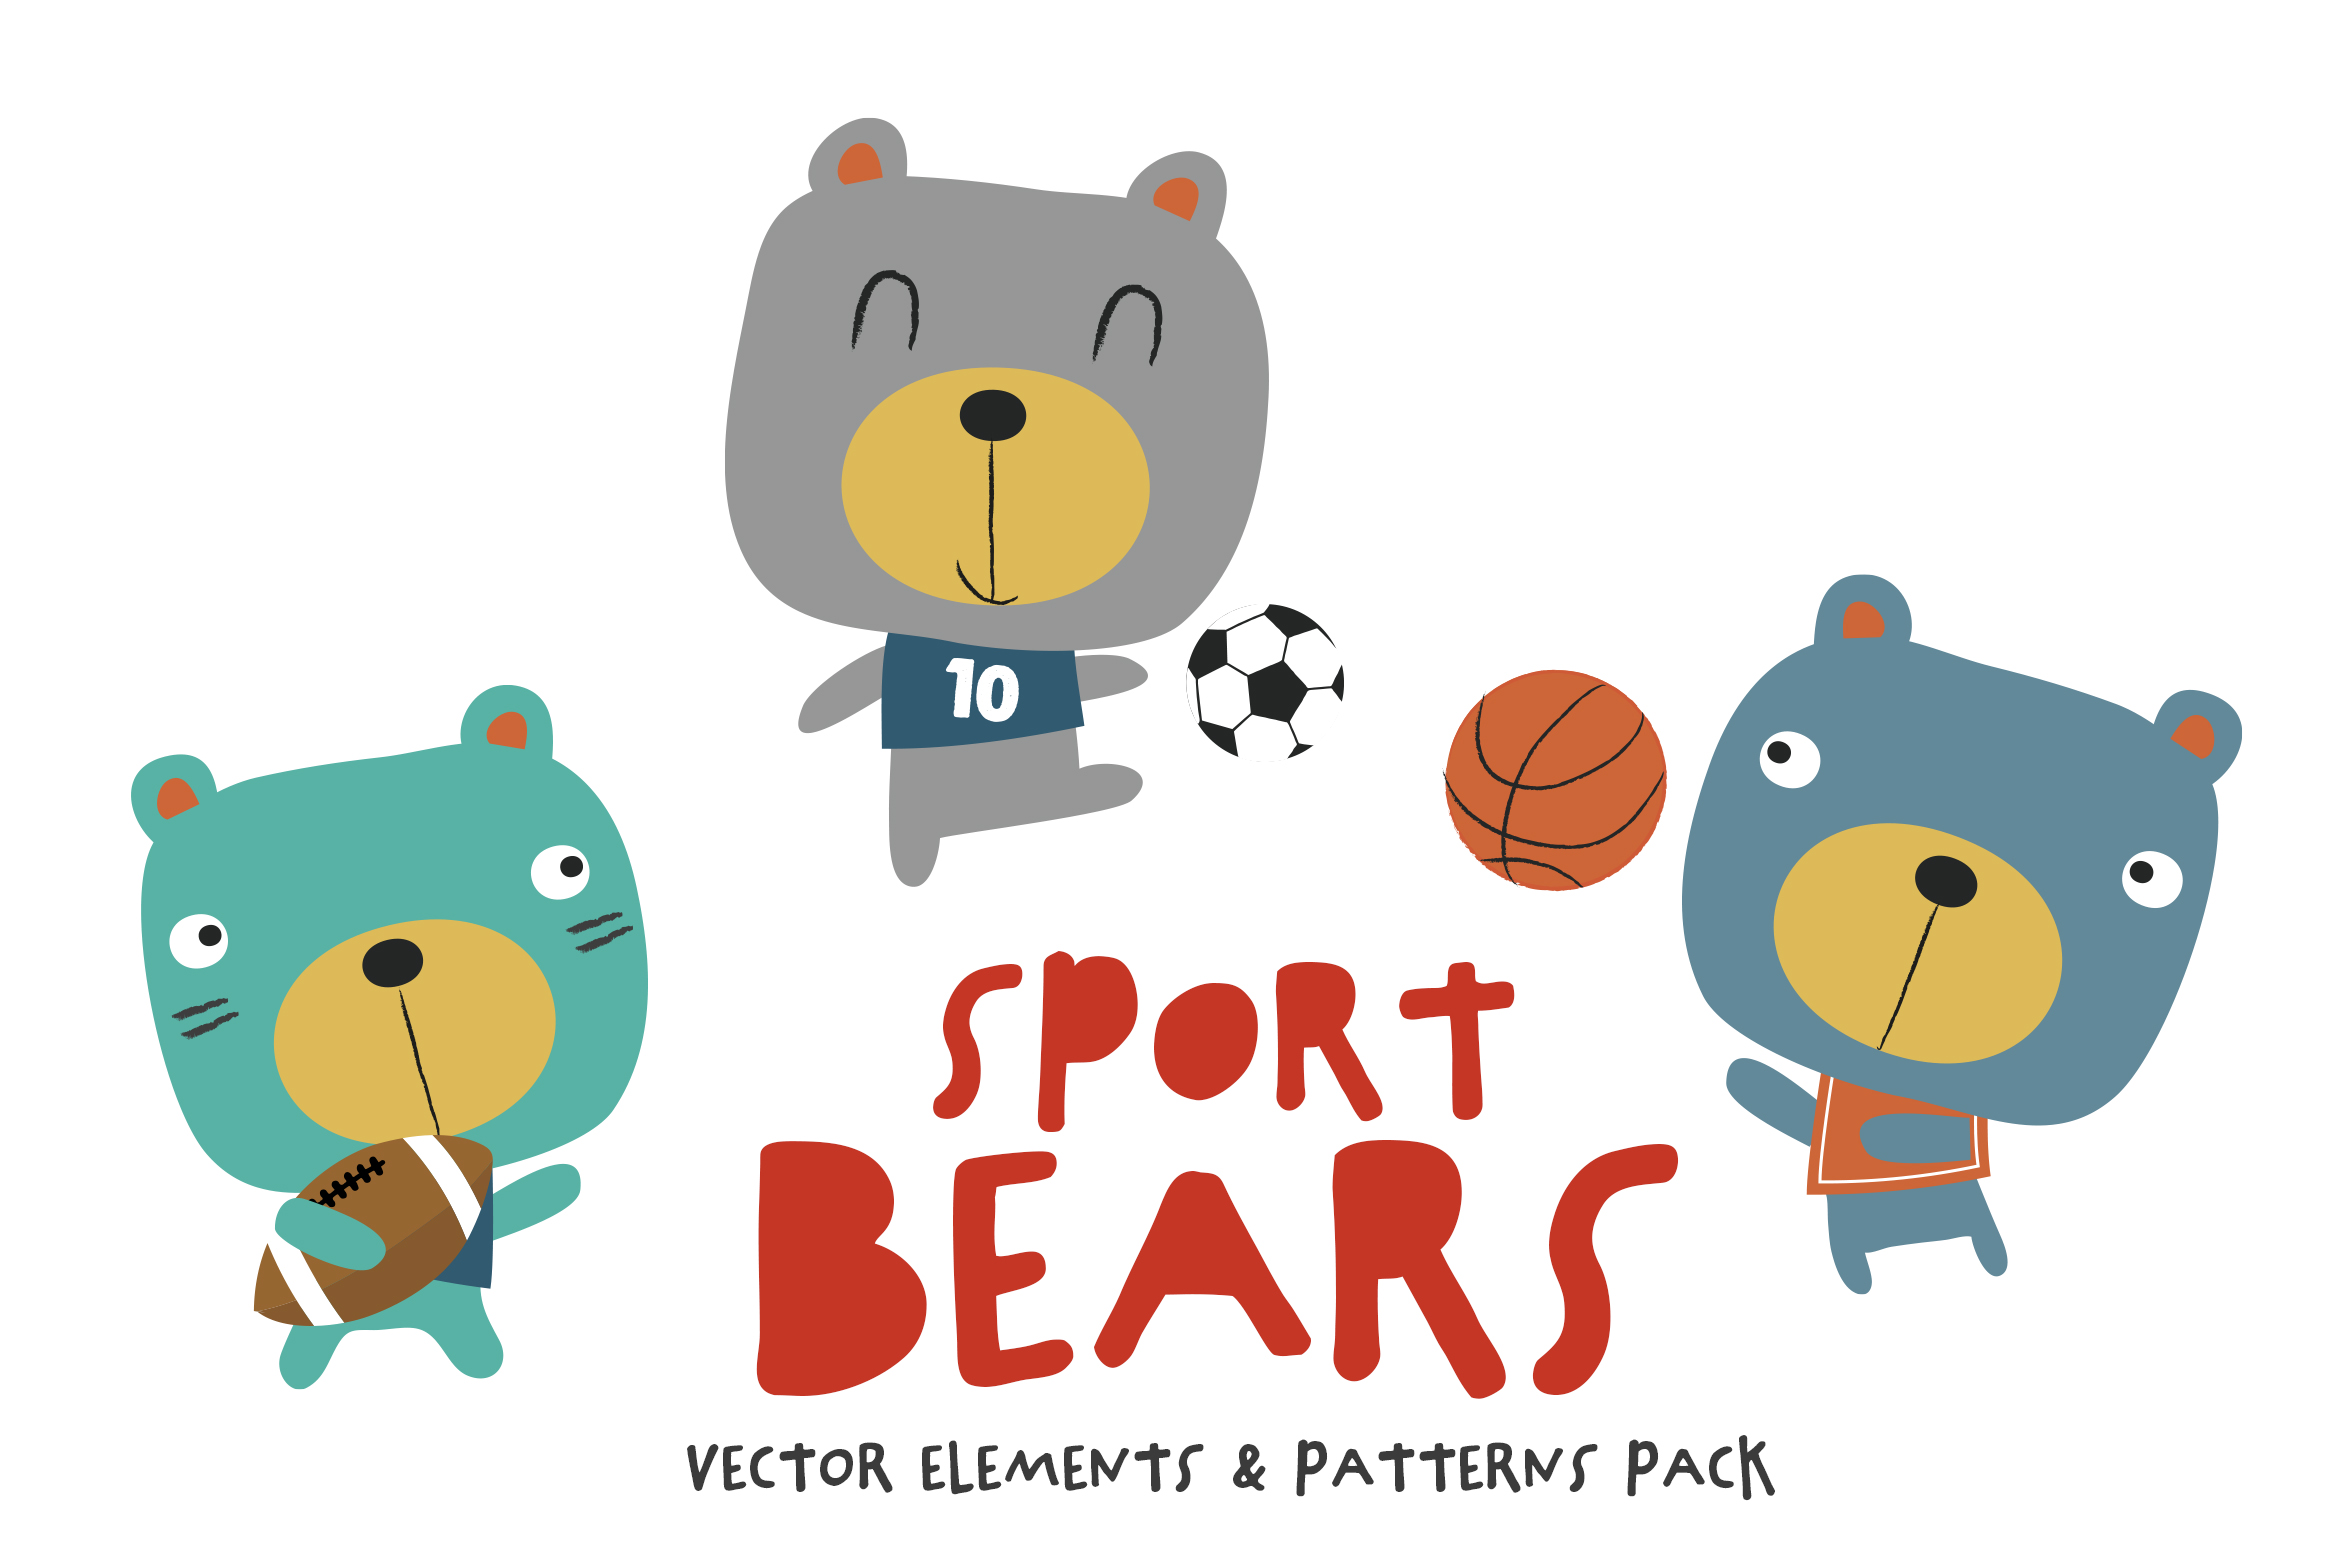 Sport_Bears_Pack_1_2340.jpg